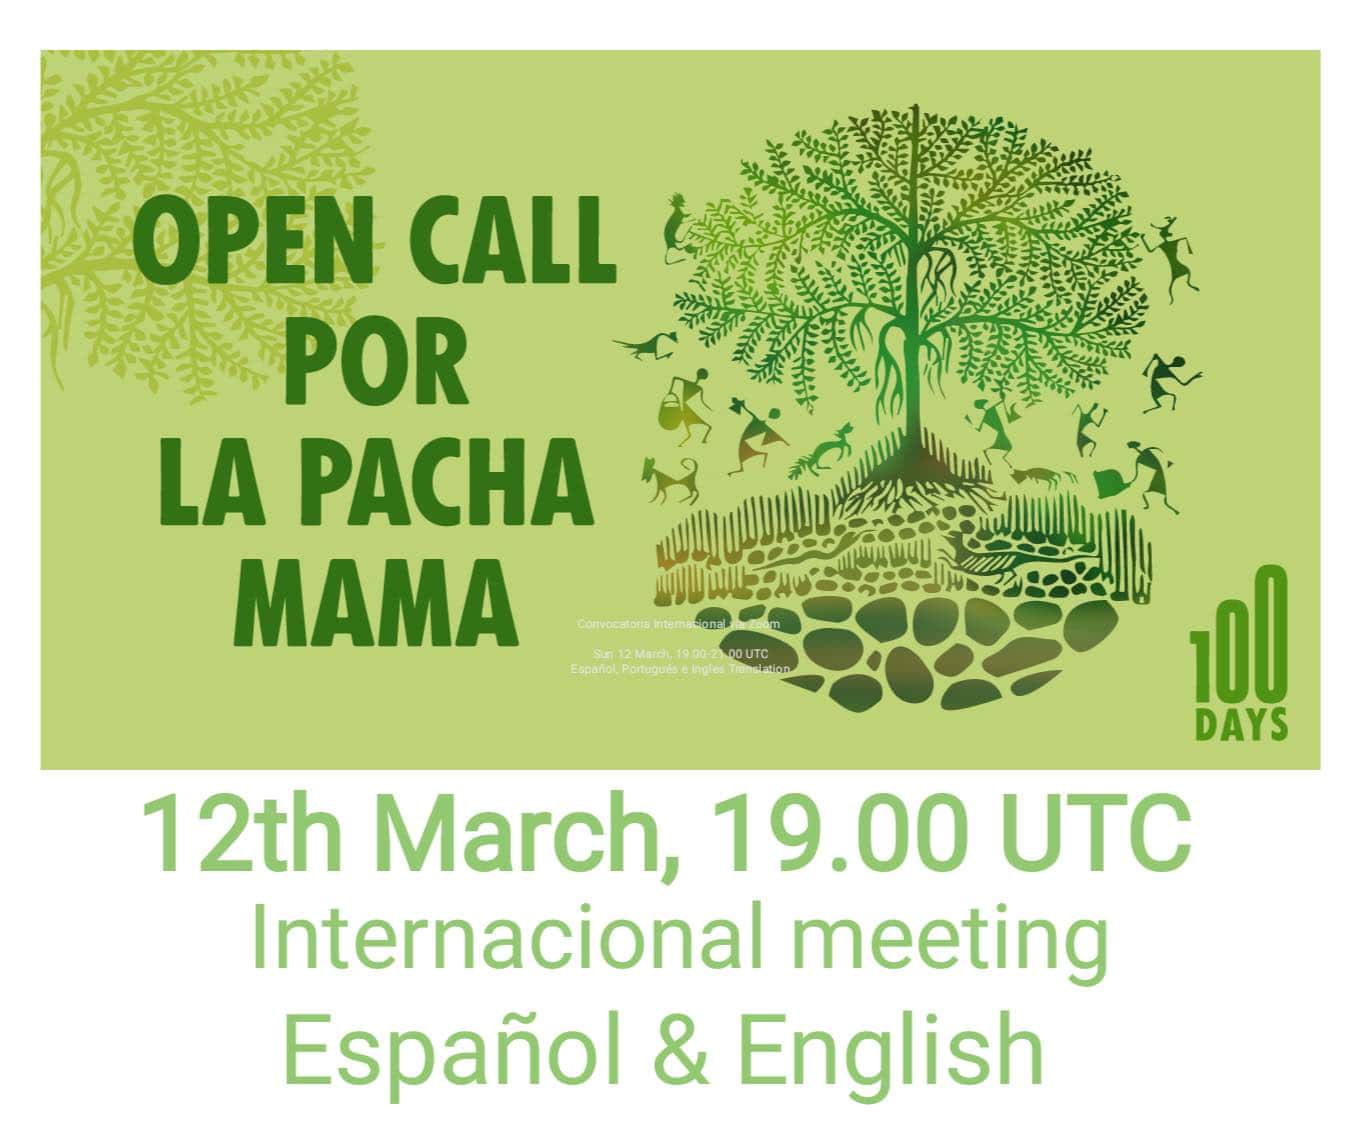 Open Call por la Pacha Mama announcement